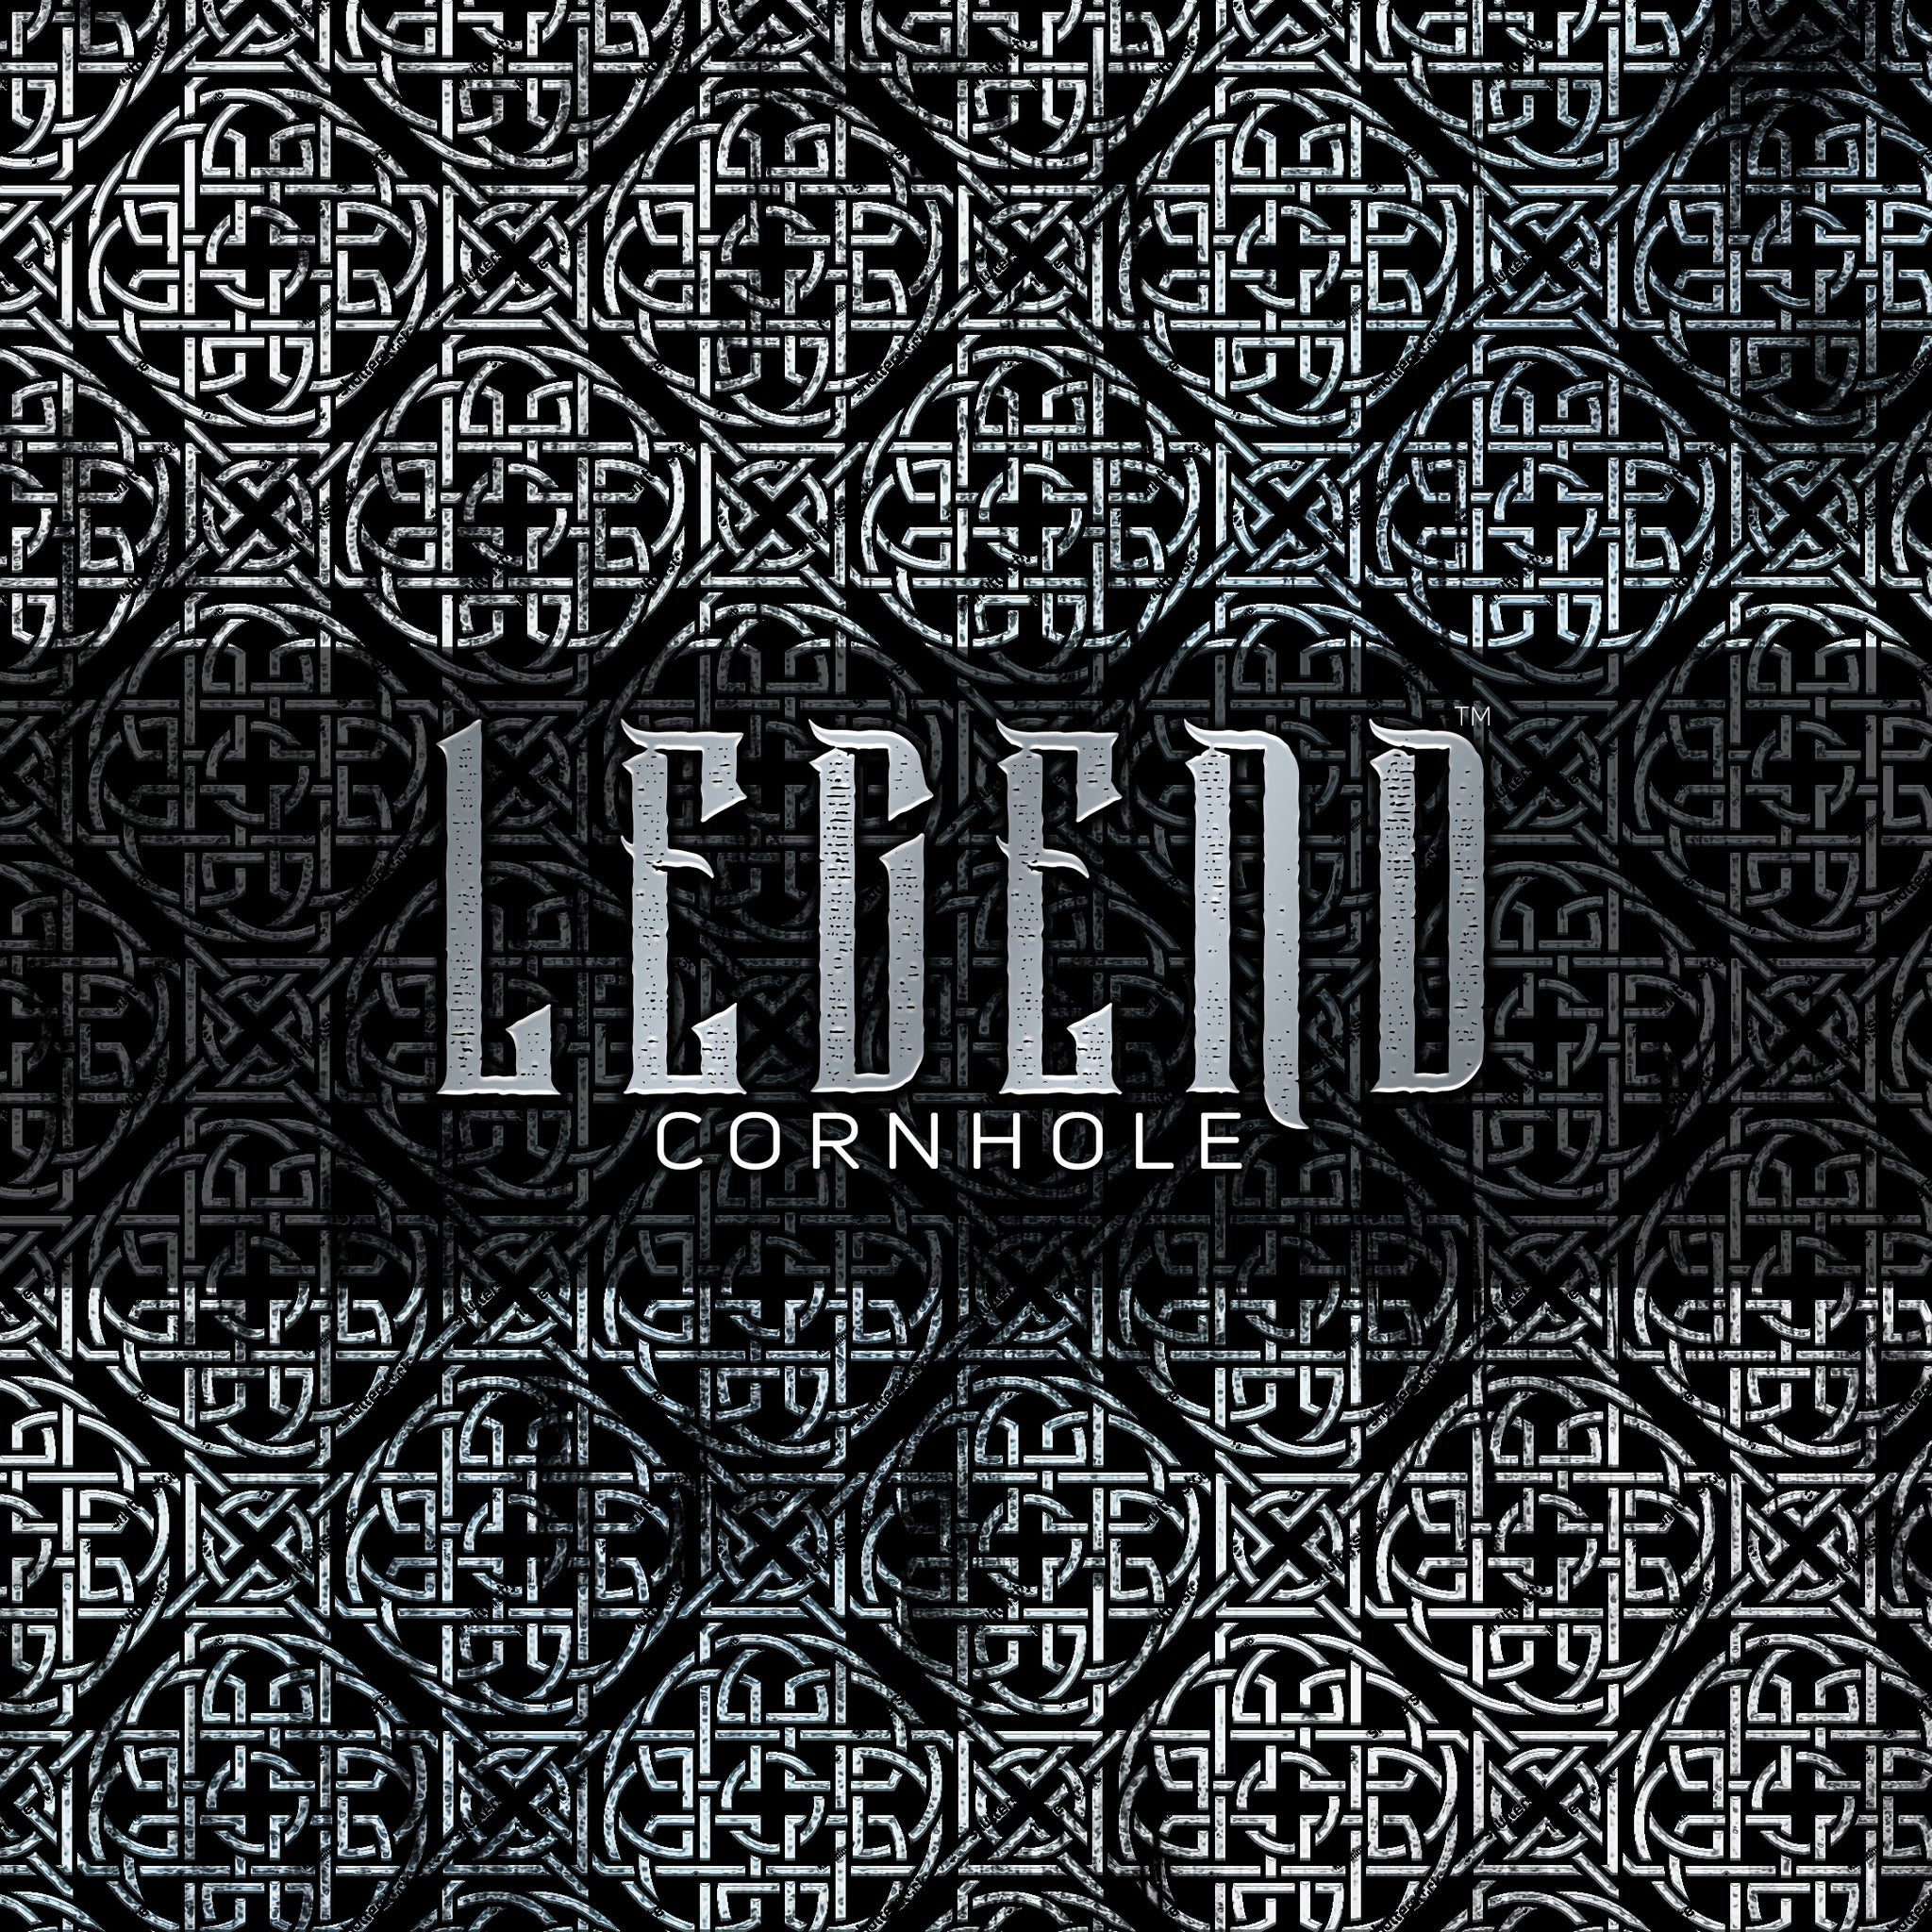 Legend™ "ALL IN™" (Elite) Premium Cornhole Bag (set of 4)